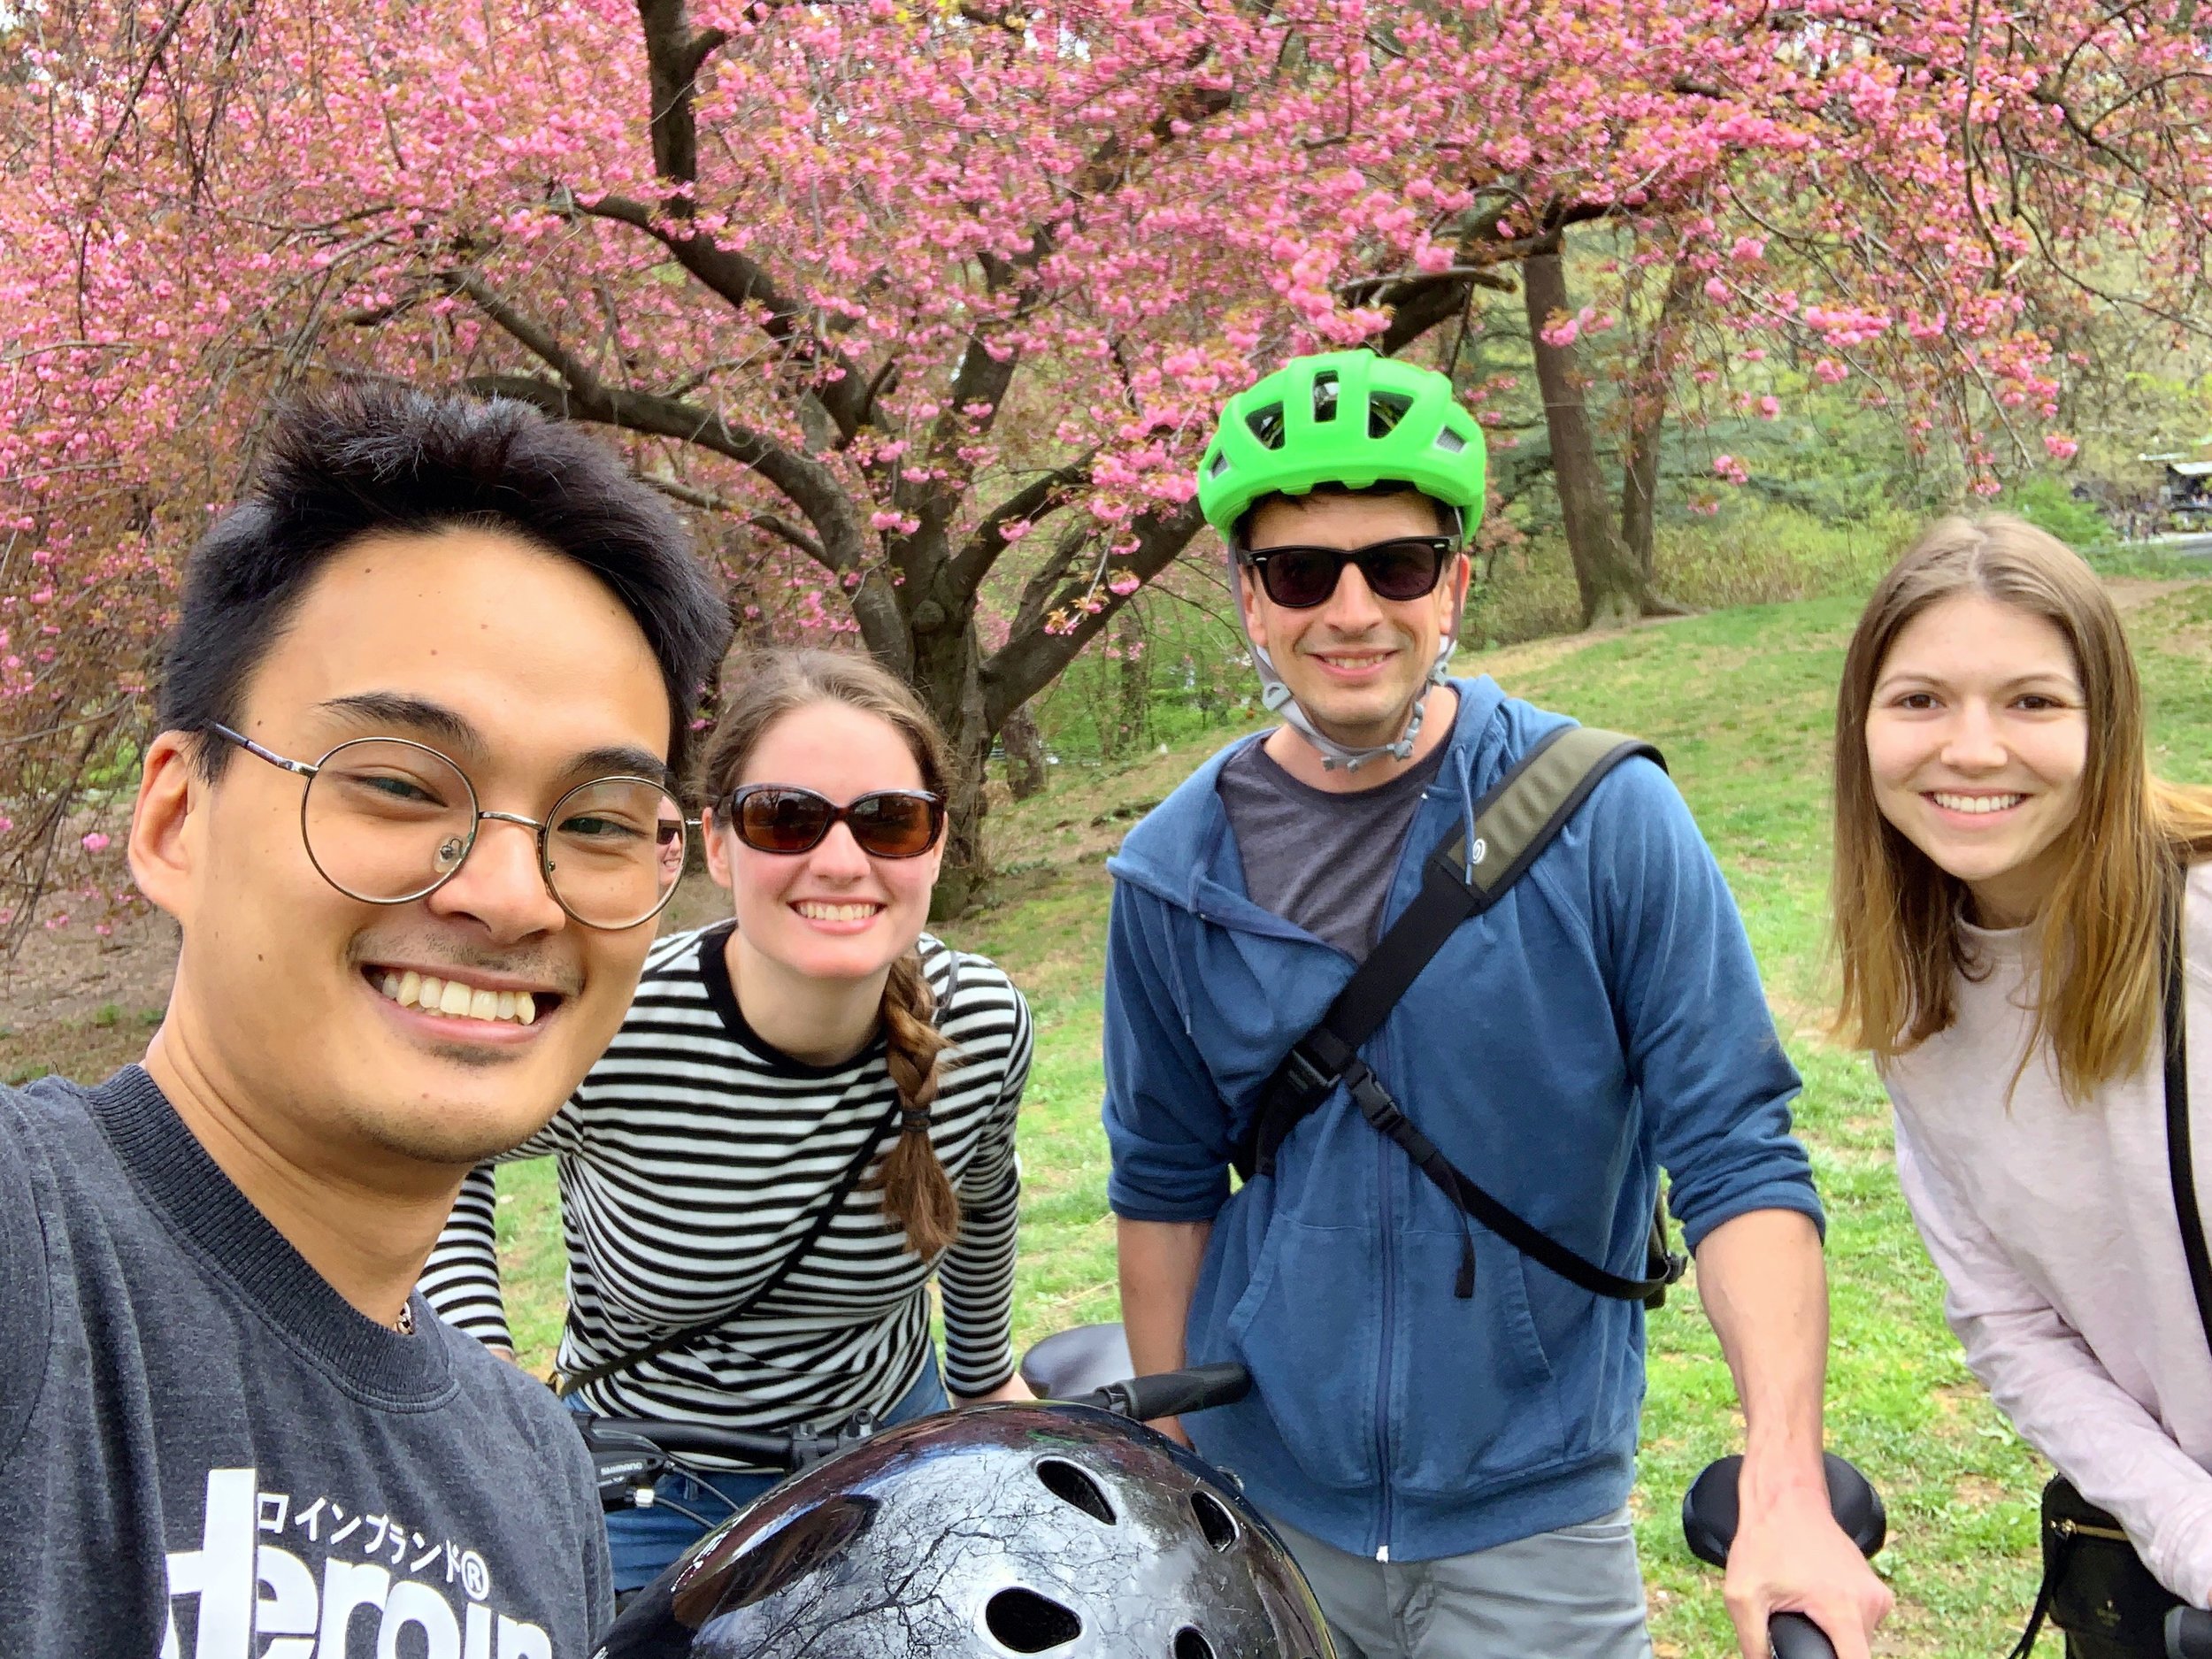 Biking in Central Park!